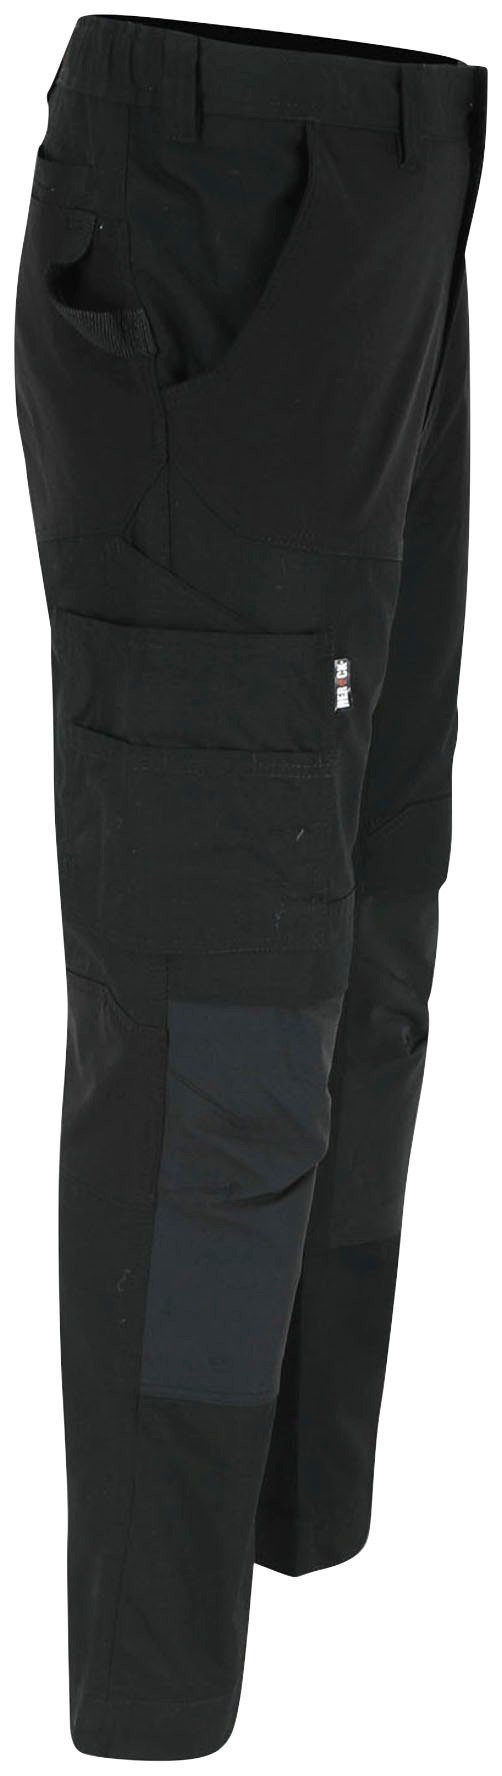 Knopf, Hector Hoses schwarz Multi-Pocket, verstärkte Knietaschen 4-Wege-Stretch, Arbeitshose Herock verdeckter